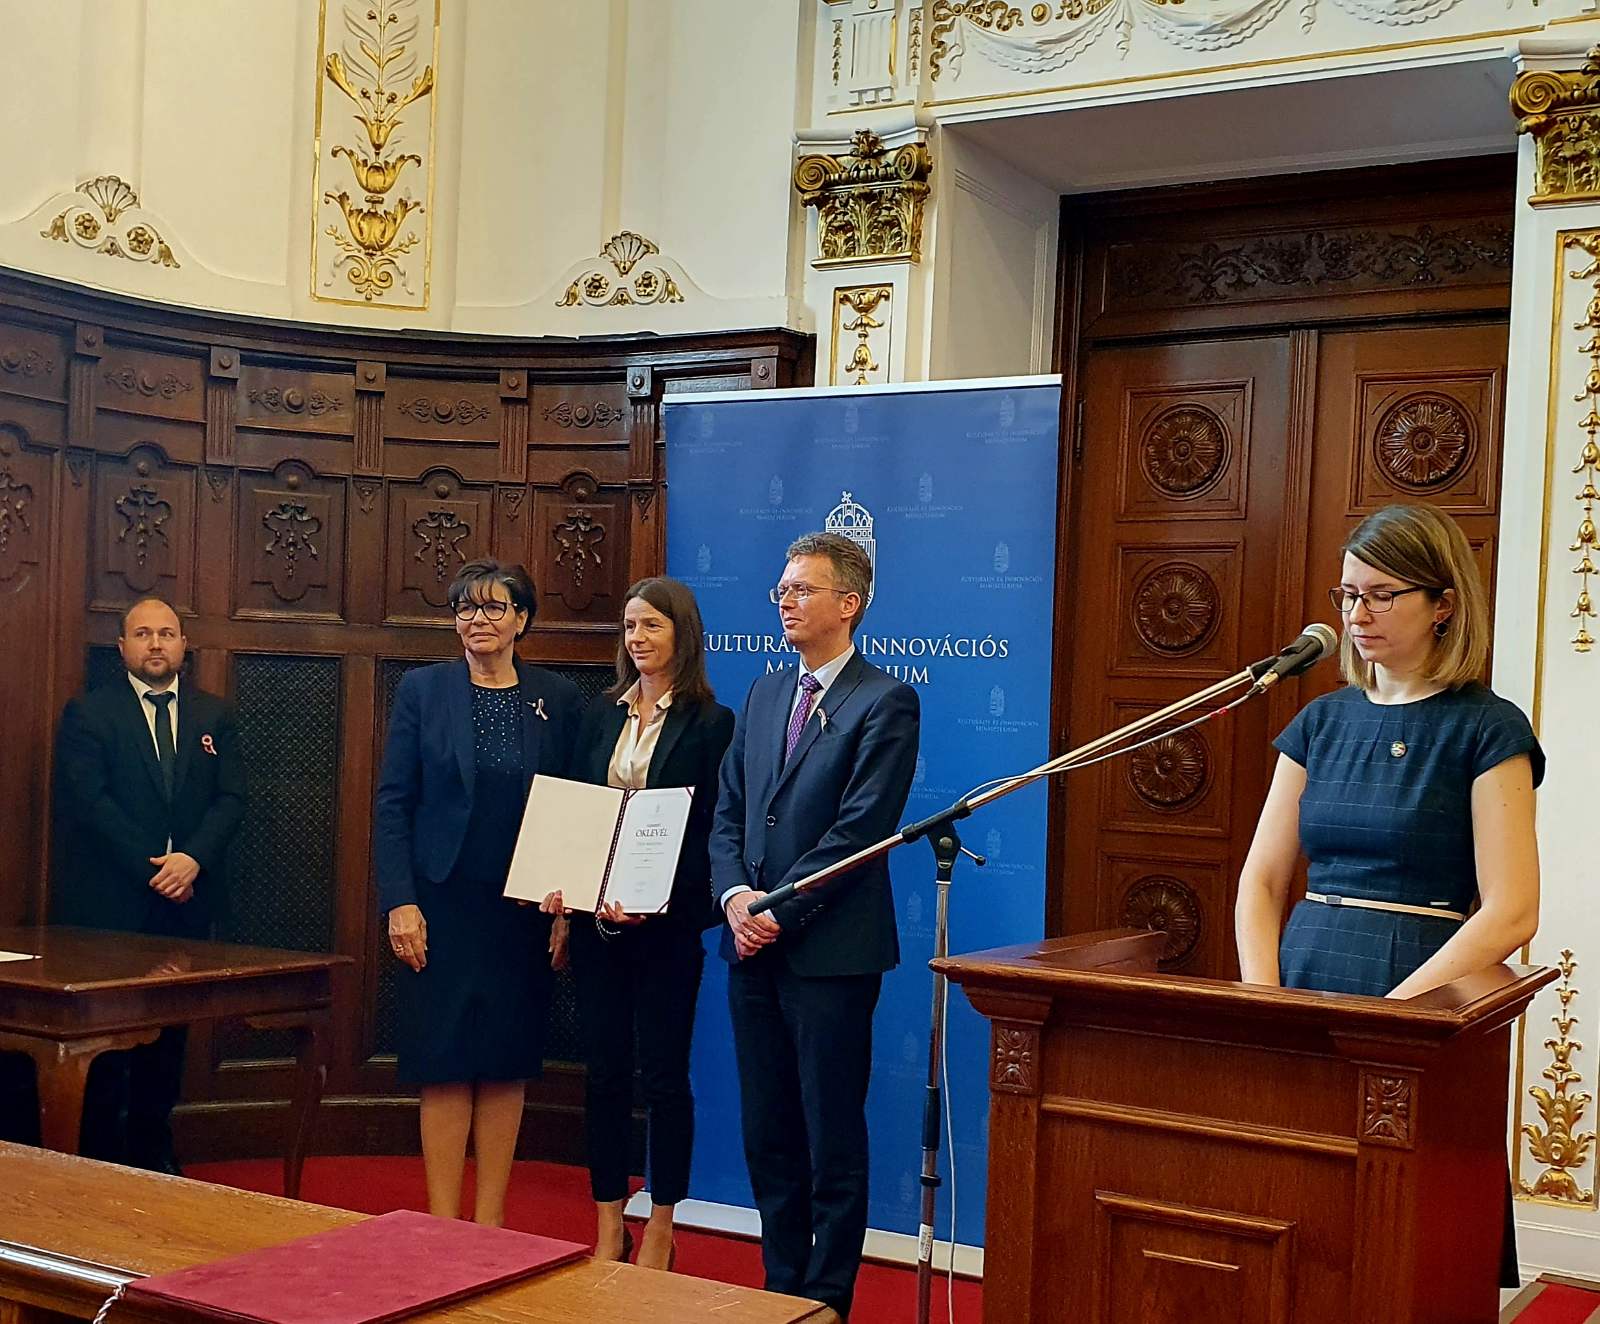 Miniszteri Elismerő Oklevél elismerésben részesült Tóth Krisztina